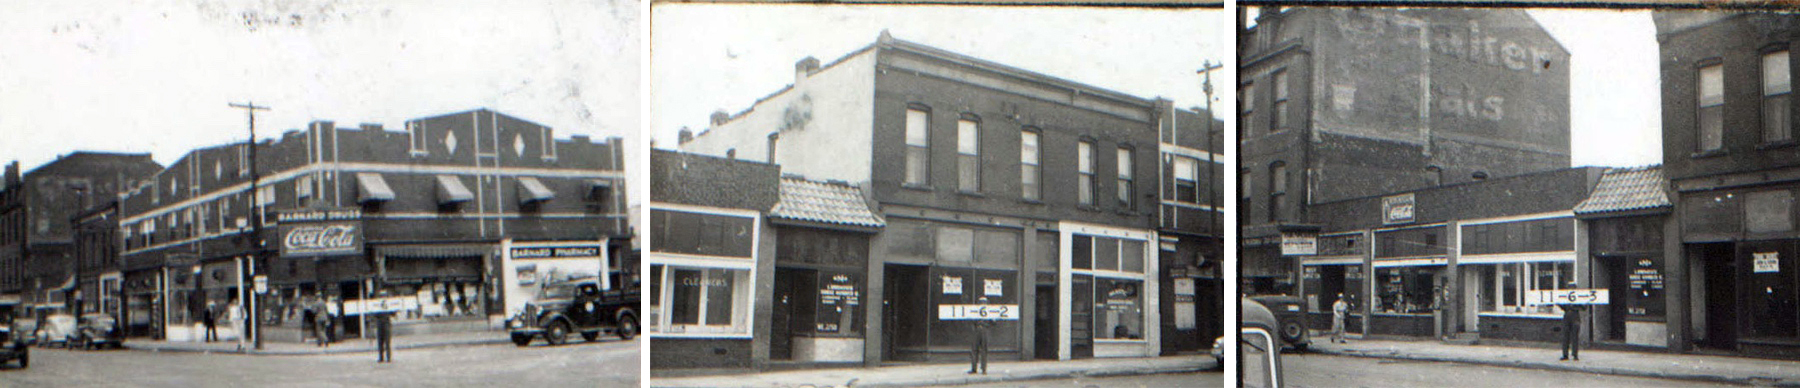 31st Street shops in 1940.